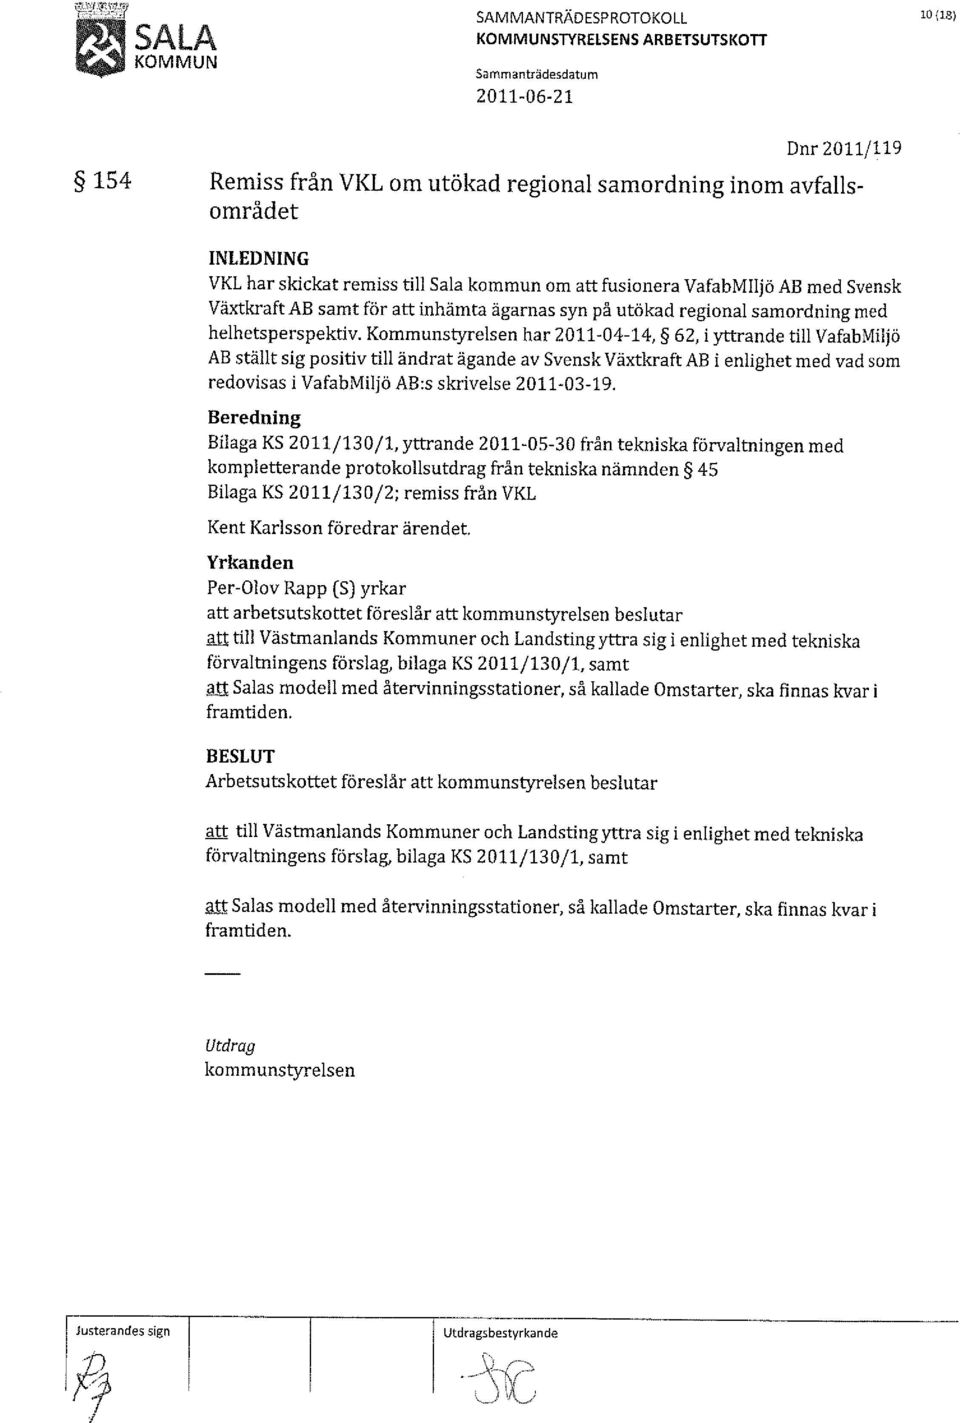 Kommunstyrelsen har 2011-04-14, 62, i yttrande till VafabMiljö AB ställt sig positiv till ändrat ägande av Svensk Växtkraft AB i enlighet med vad som redovisas i VafabMiljö AB:s skrivelse 2011-03-19.